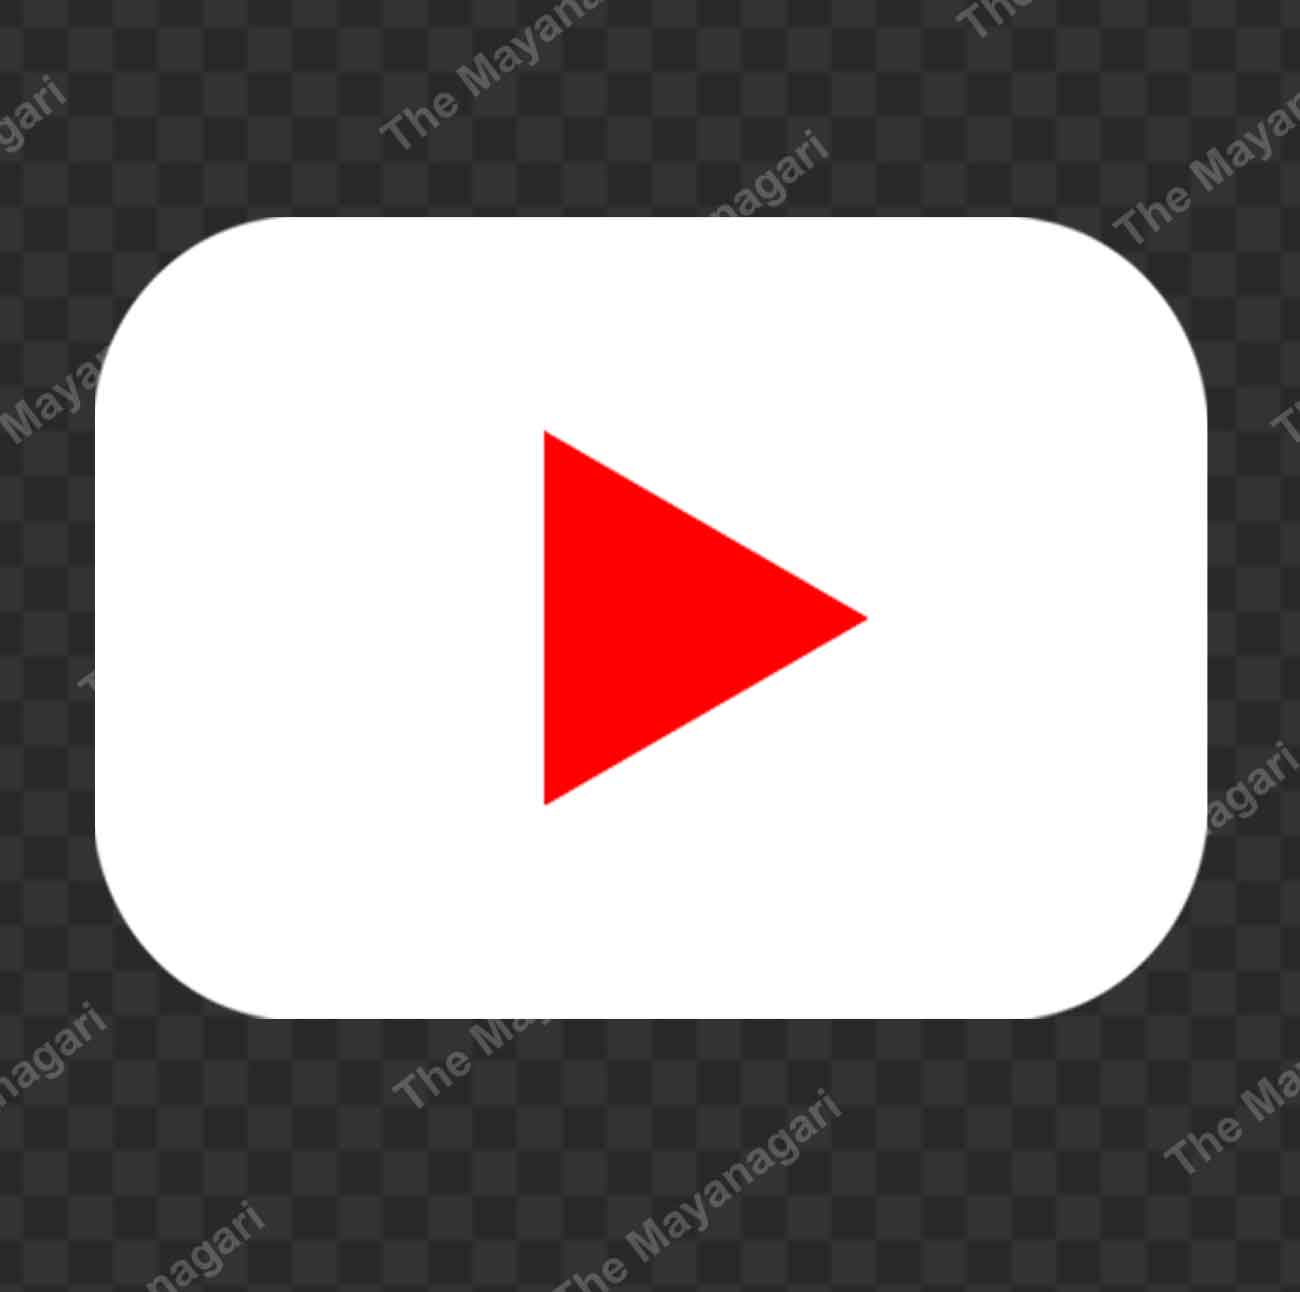 Youtube Splash Logo Png Free Download The Mayanagari